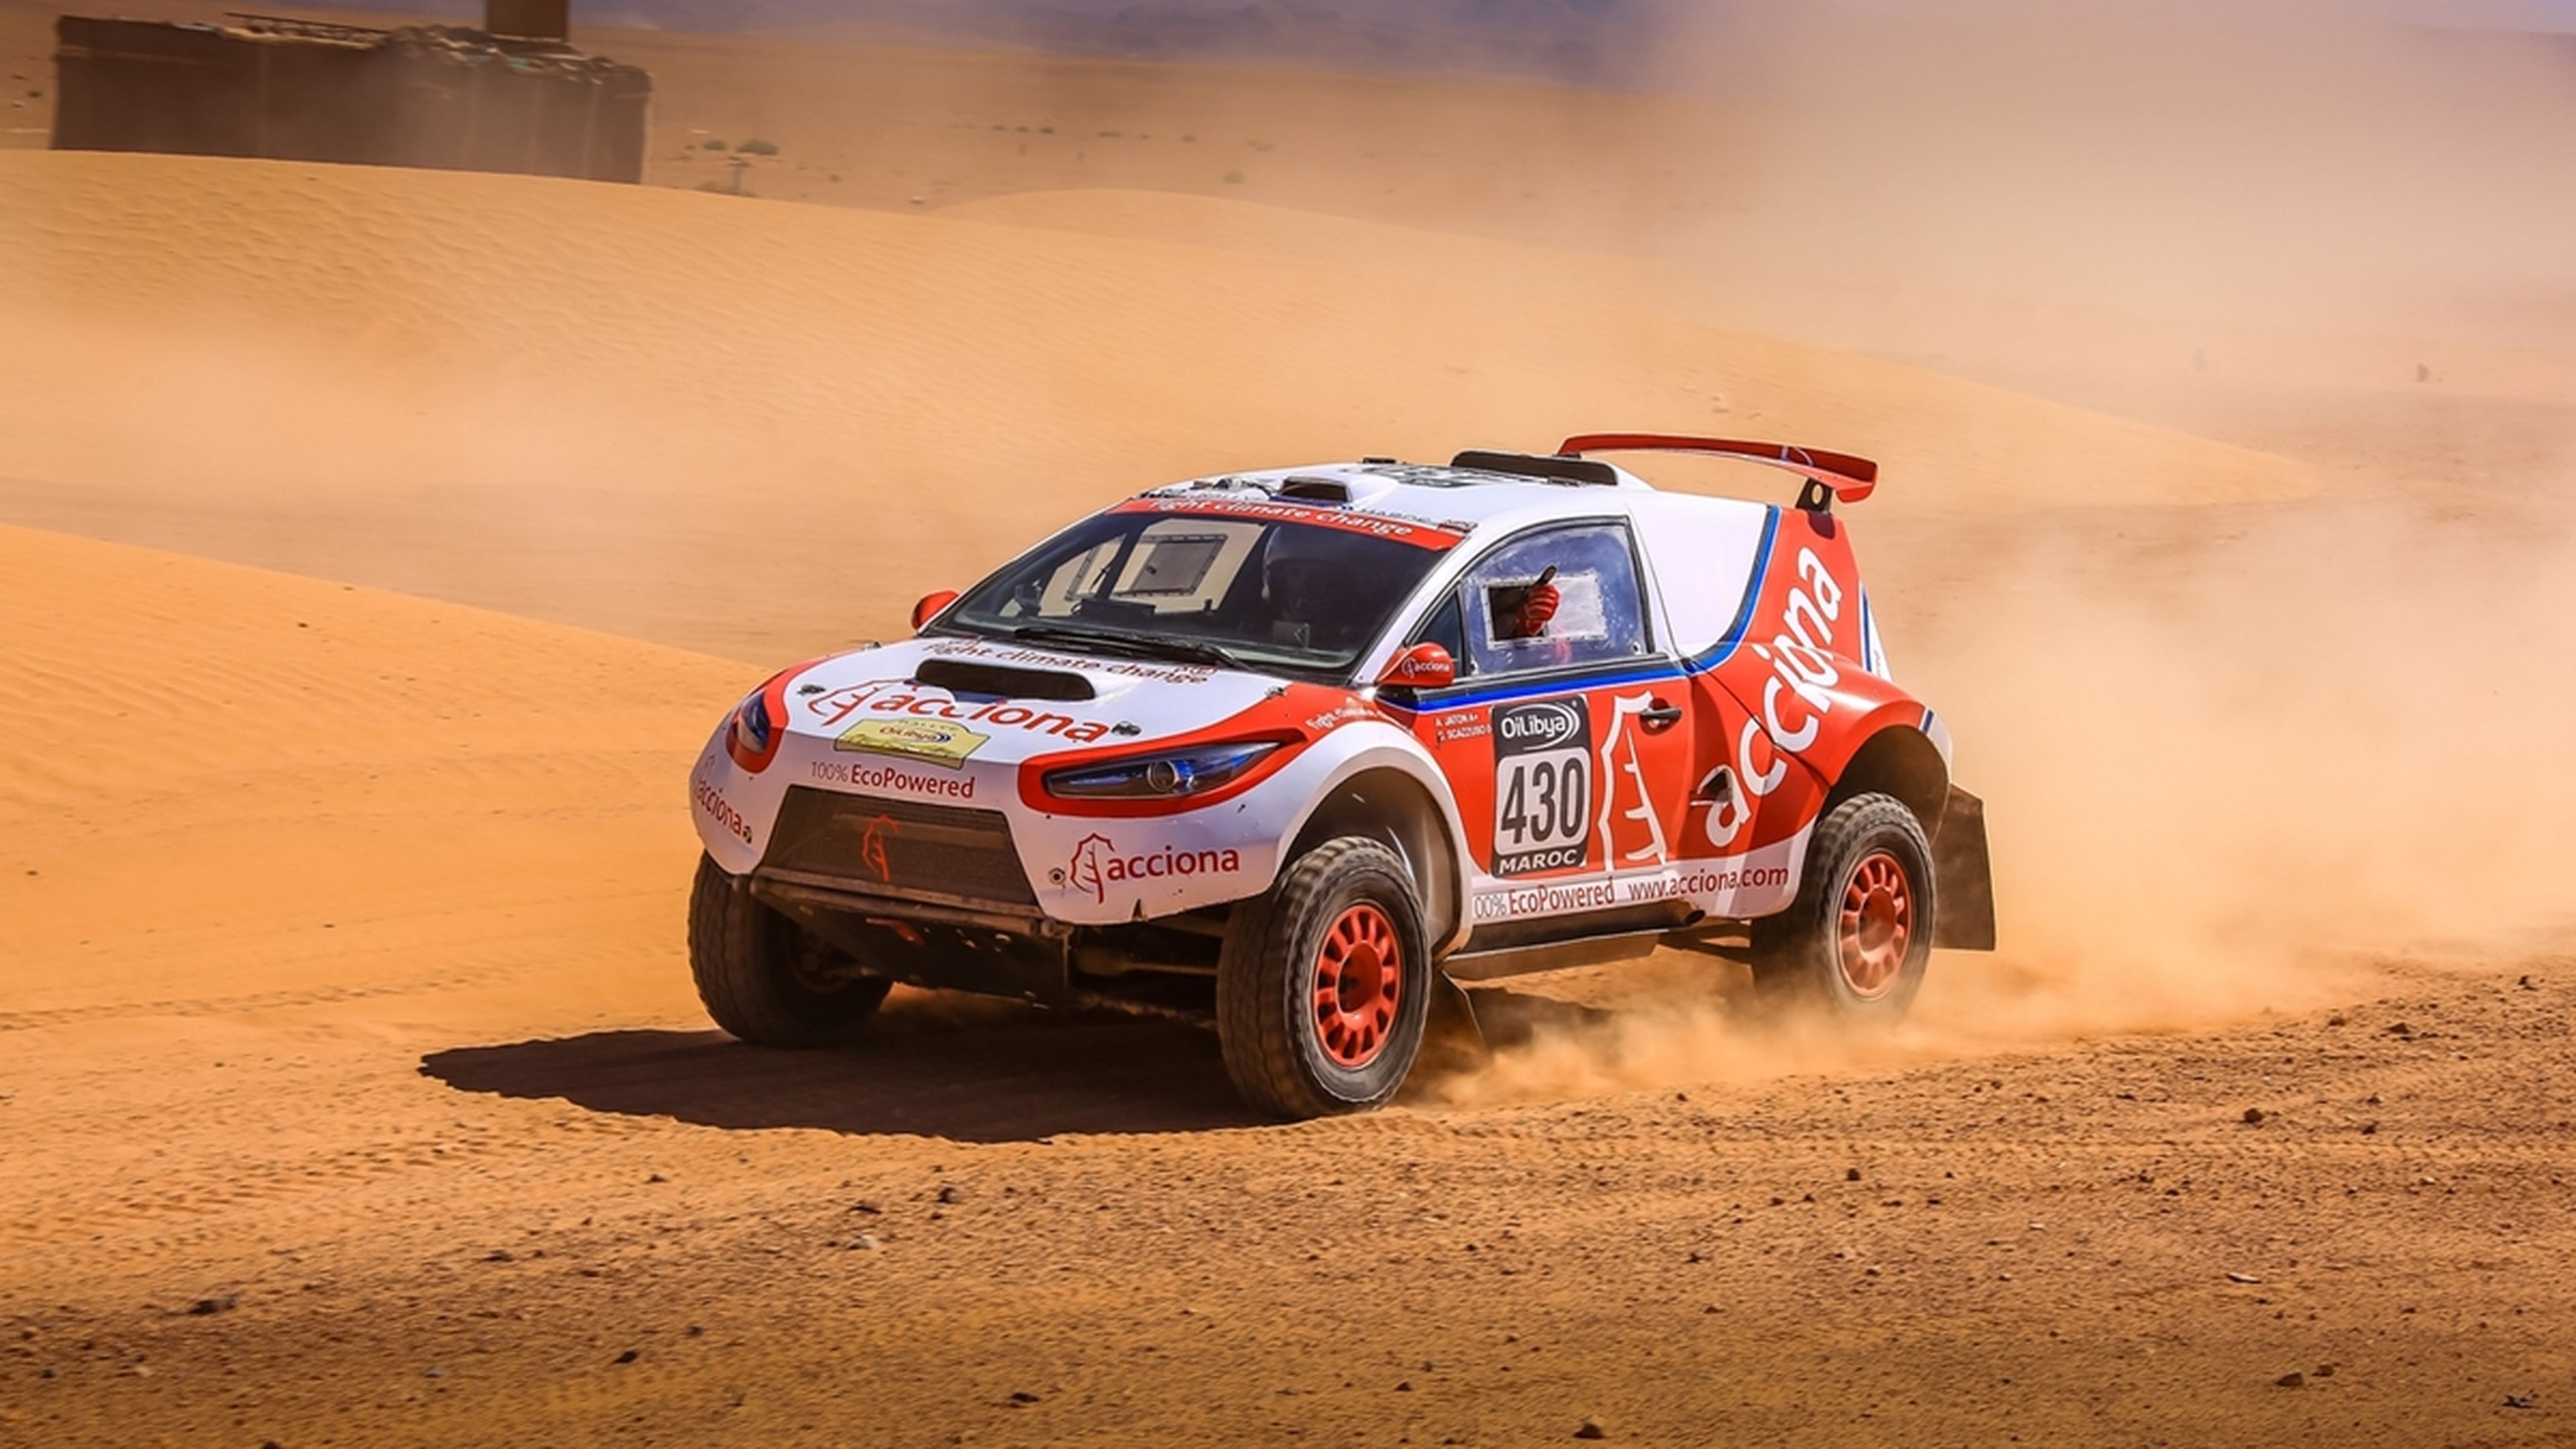 El Acciona 100% EcoPowered competirá en el Dakar 2017